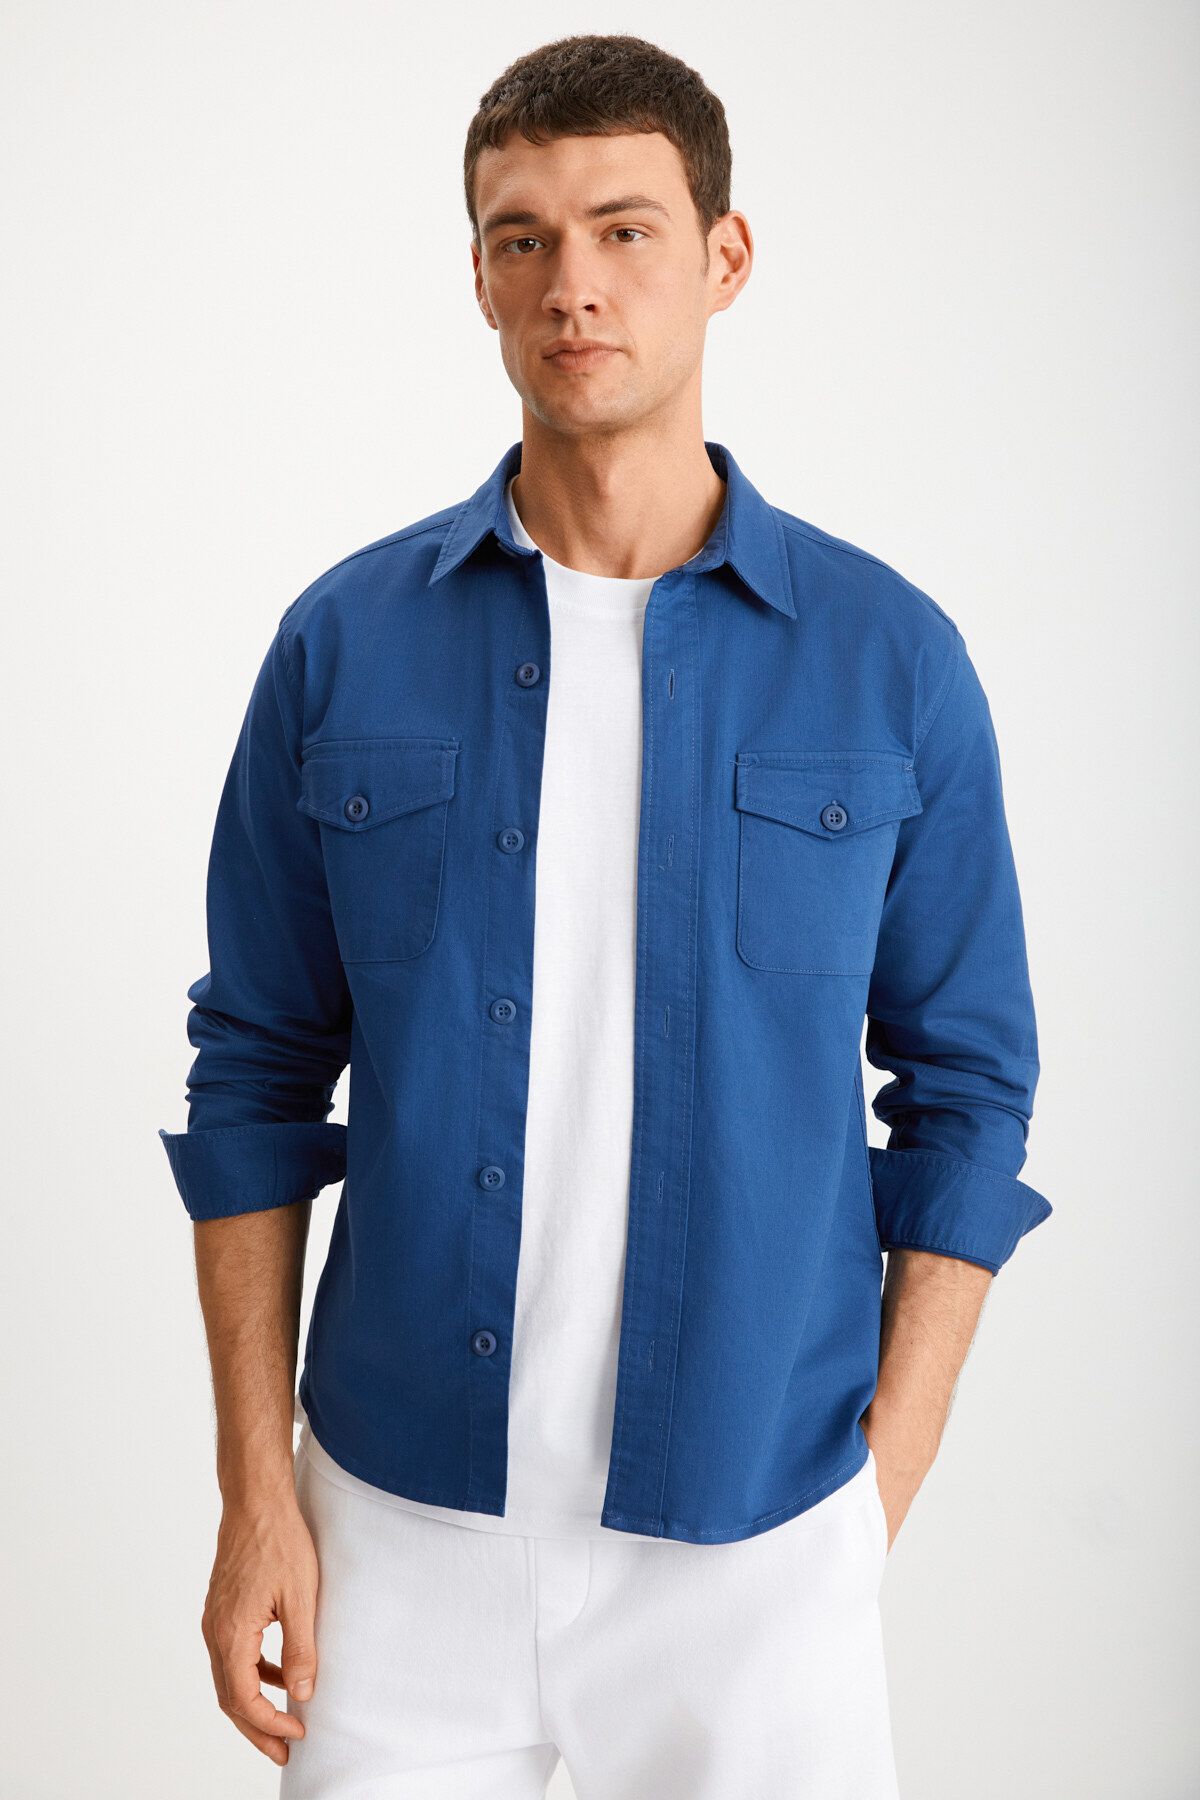 GRIMELANGE Nader Erkek Dokuma Kalın Dokulu Yüzeyli Kapaklı Cepli Düğmeli Mavi Ceket